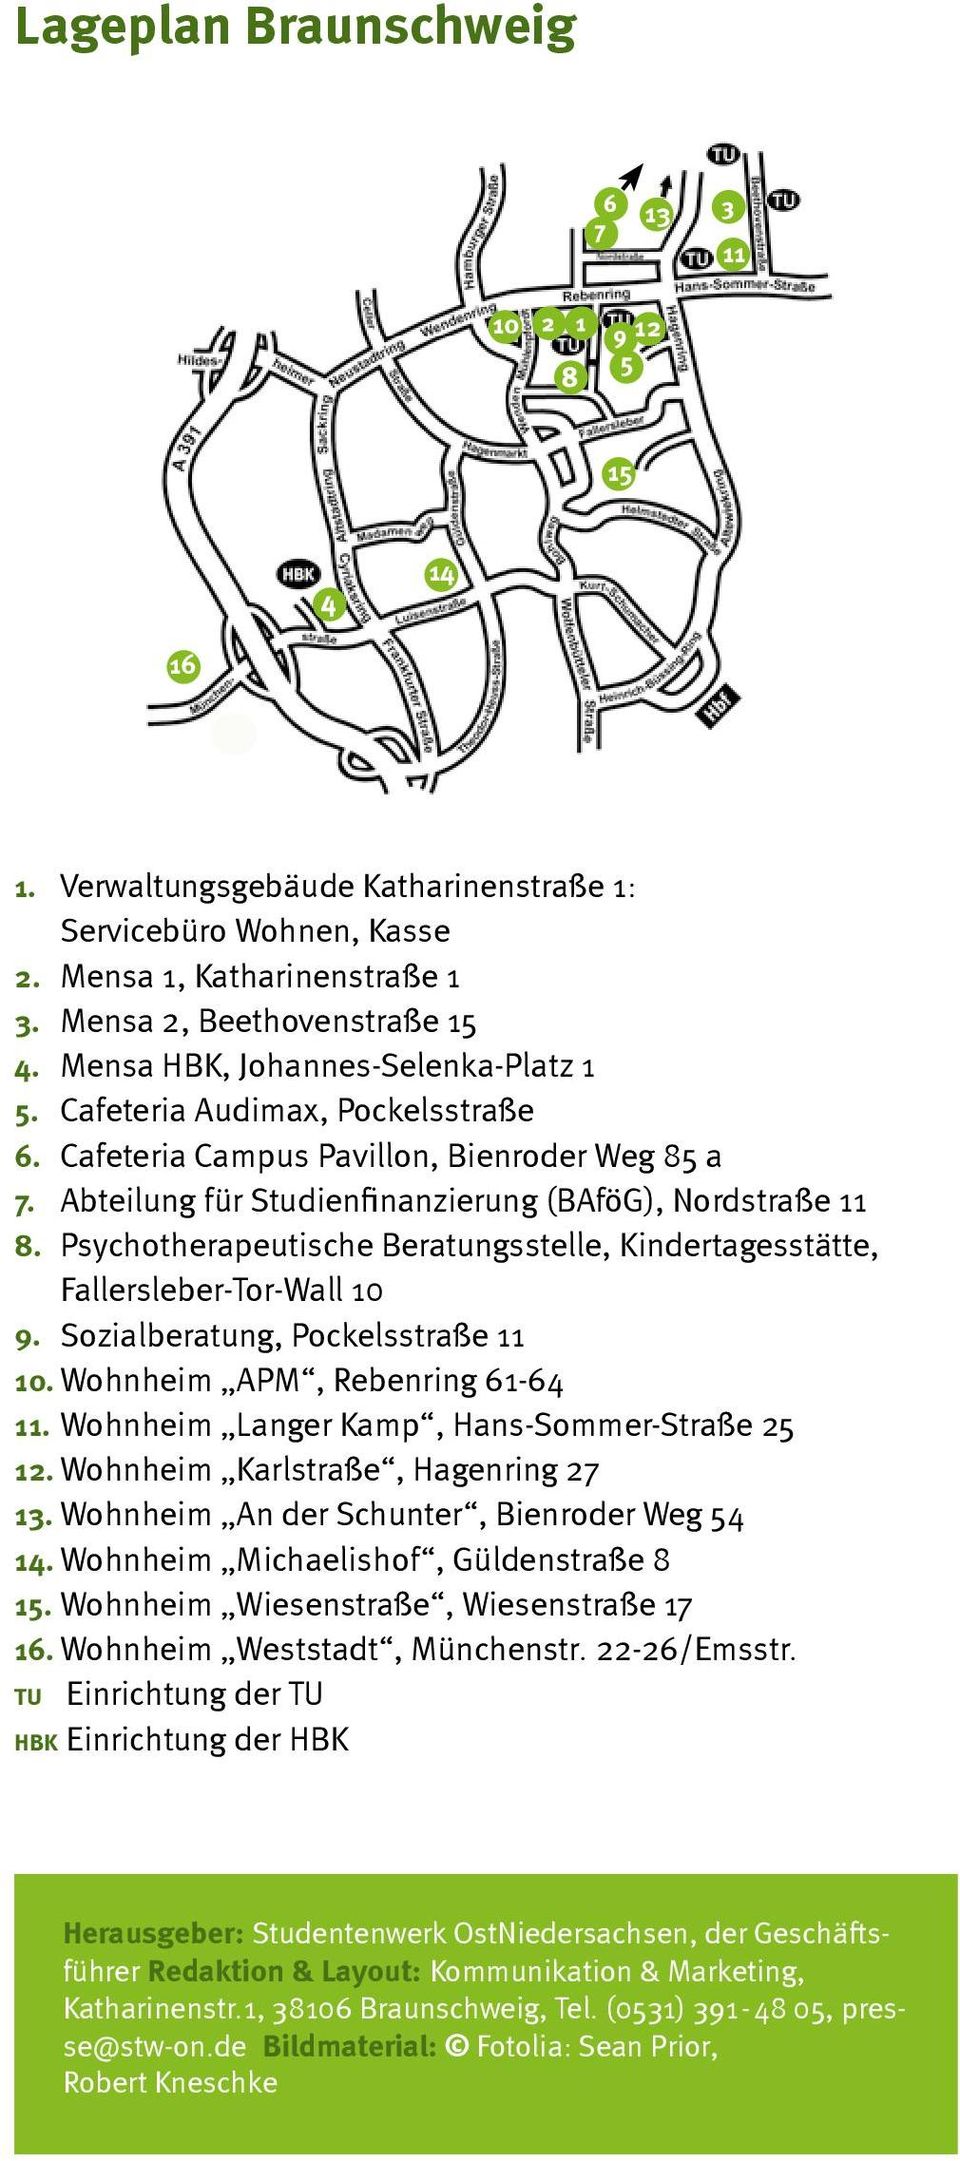 Psychotherapeutische Beratungsstelle, Kindertagesstätte, Fallersleber-Tor-Wall 10 9. Sozialberatung, Pockelsstraße 11 10. Wohnheim APM, Rebenring 61-64 11.